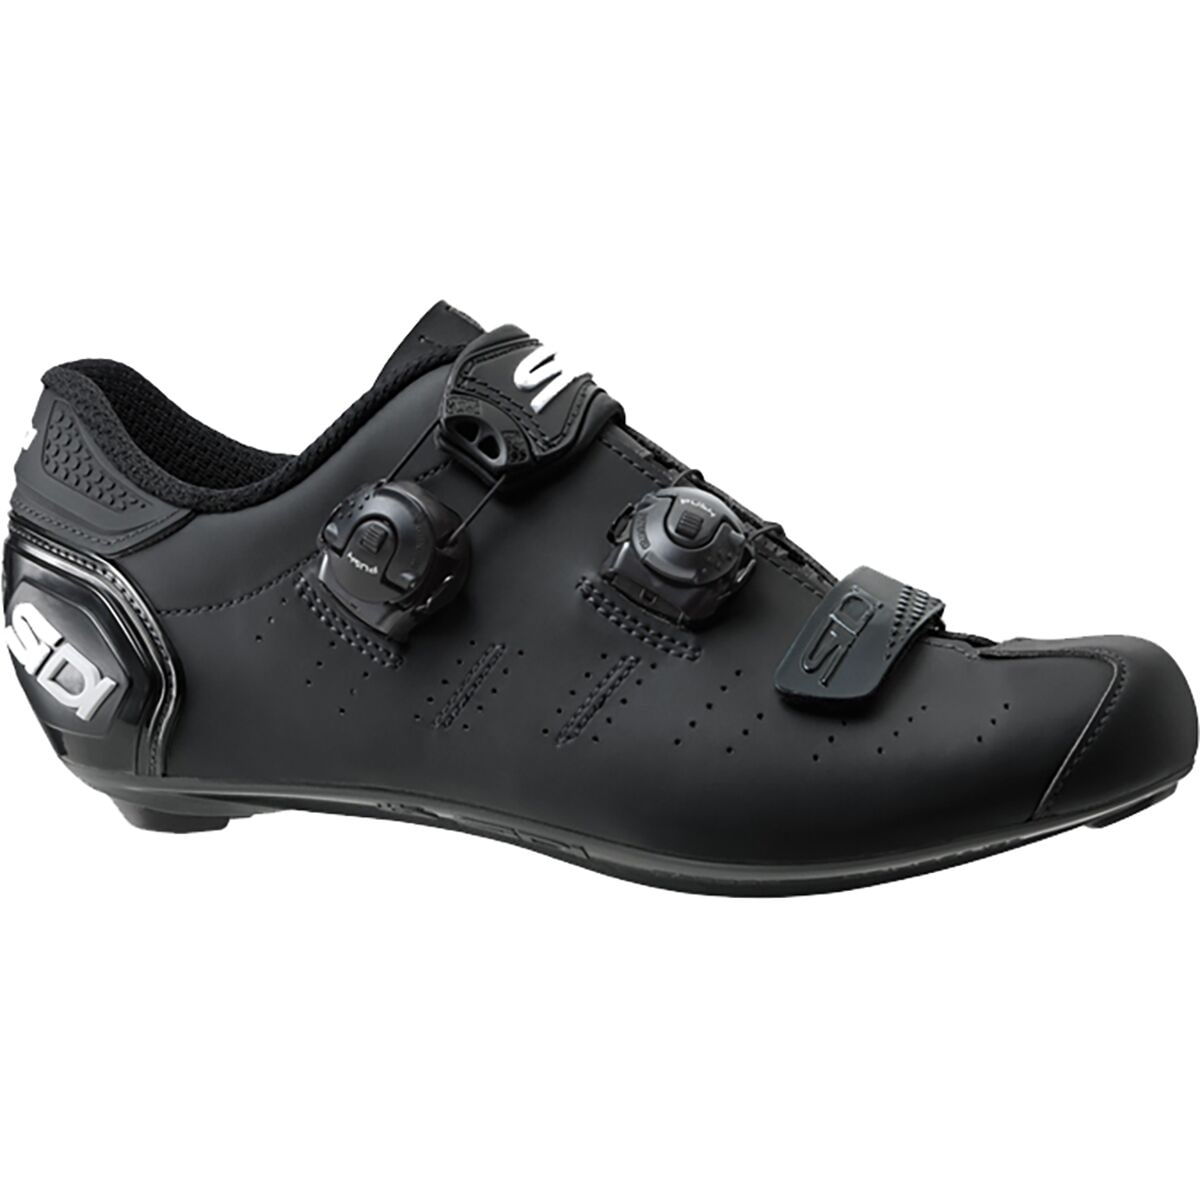 Sidi Ergo 5 Mega Cycling Shoe - Men's Black, 43.0